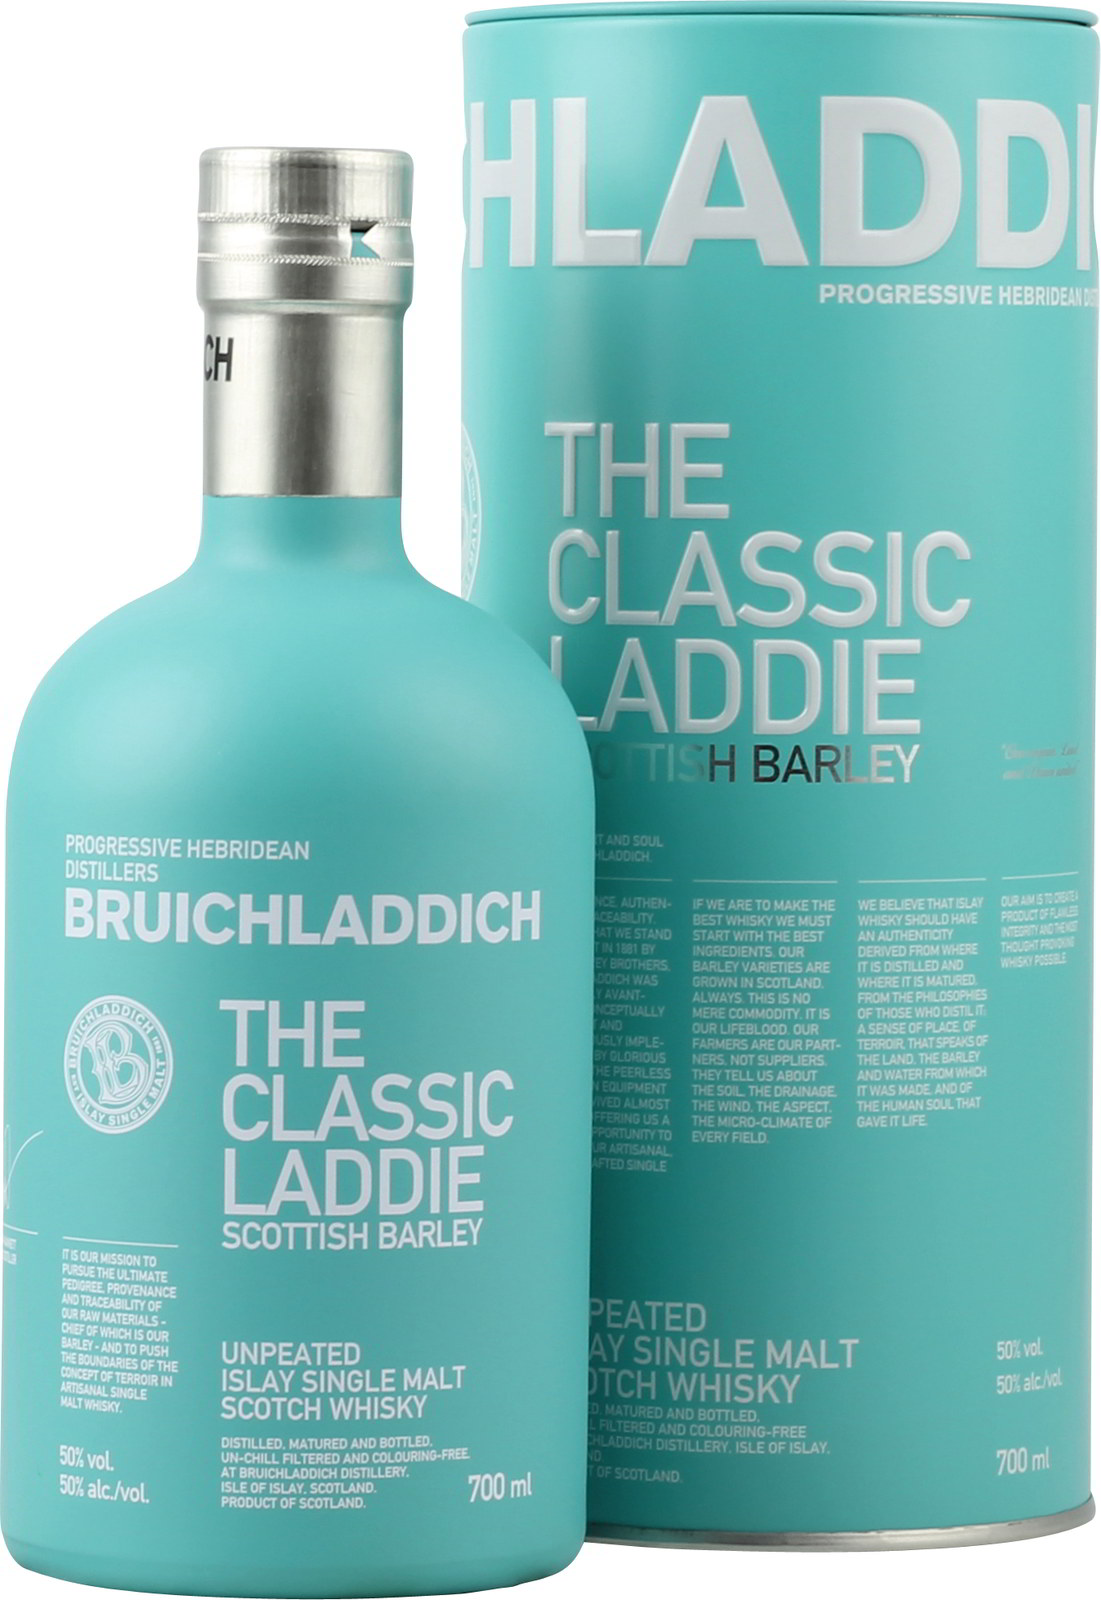 Bruichladdich The Classic Laddie Scottish Barley Islay